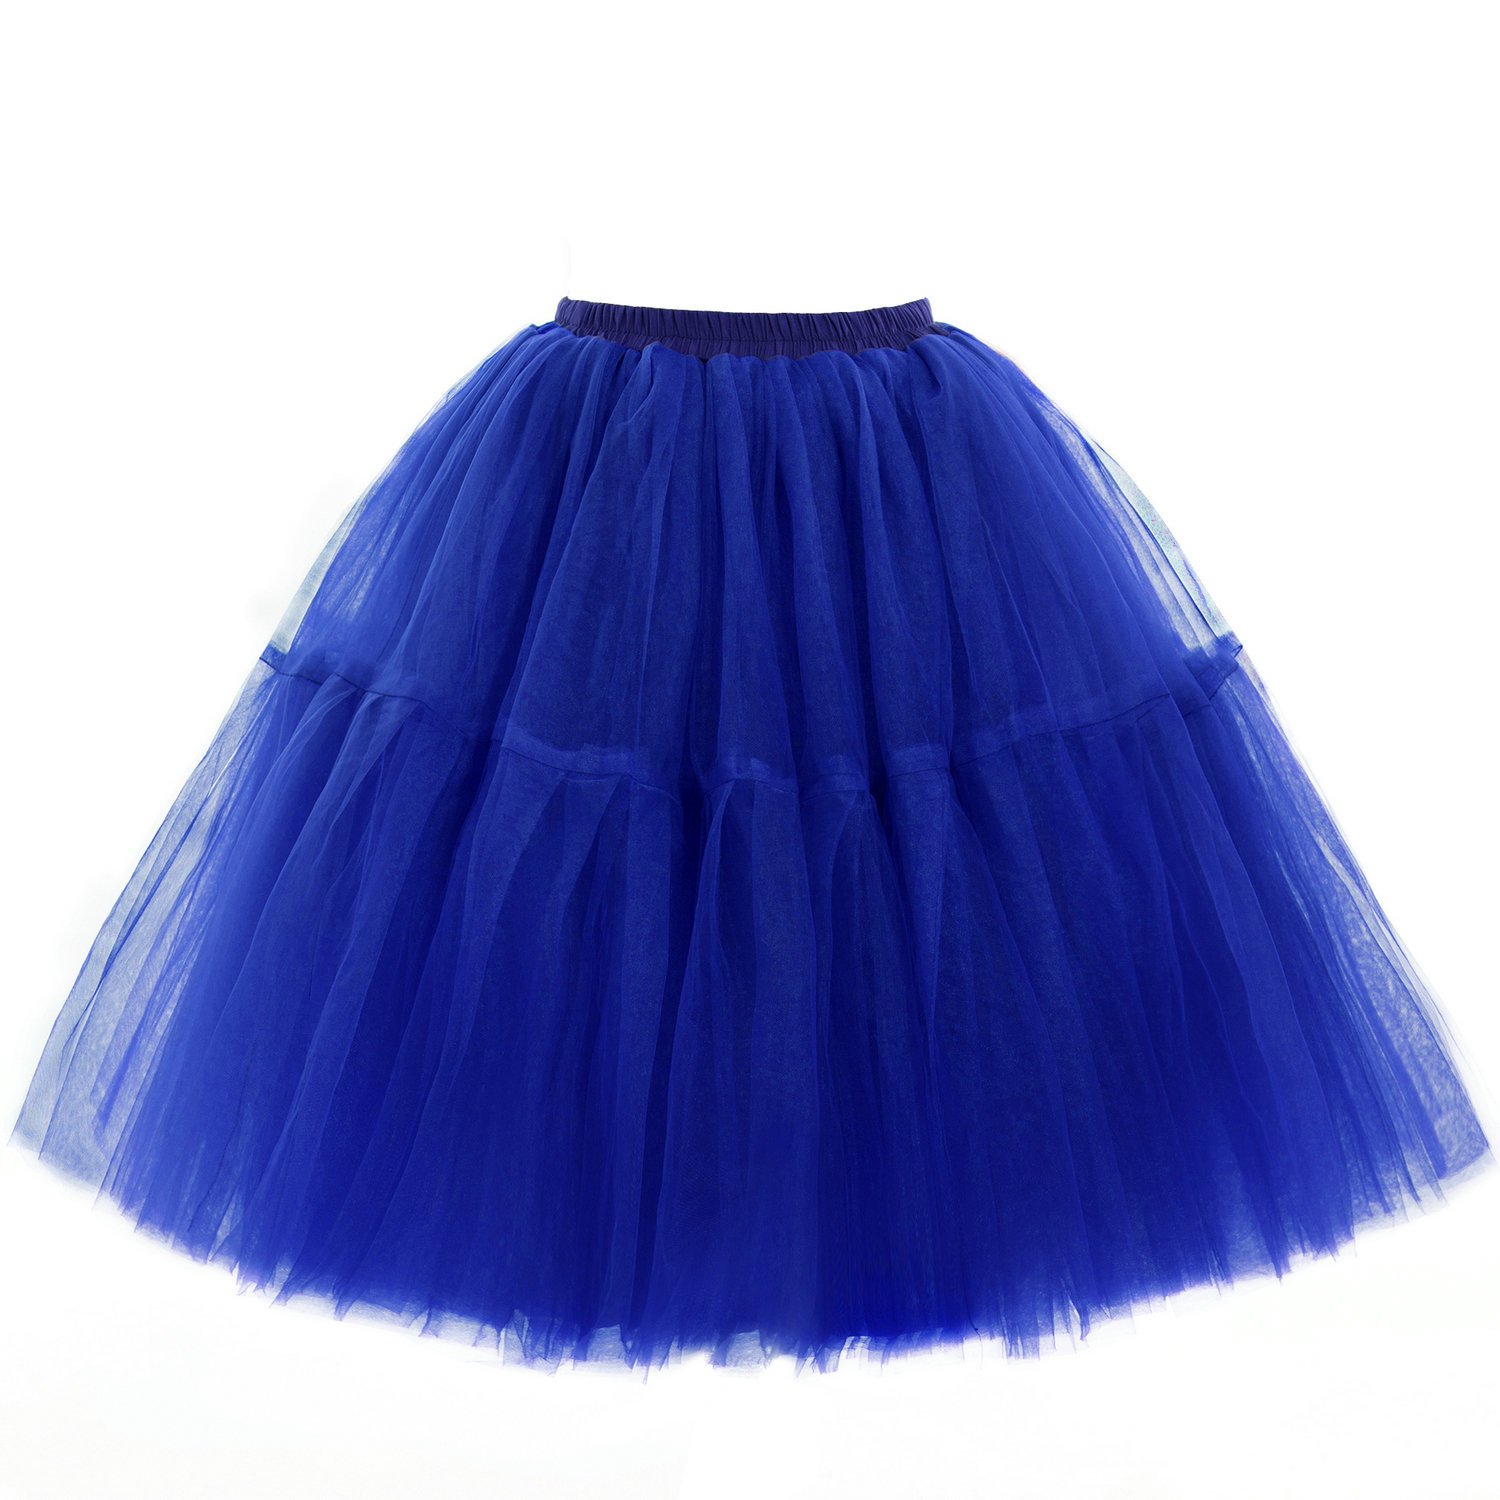 Babyonline Damen Tüllrock 5 Lage Prinzessin Kleider Knielang Petticoat Ballettrock Unterrock Pettiskirt Swing One Size - Royal Blau